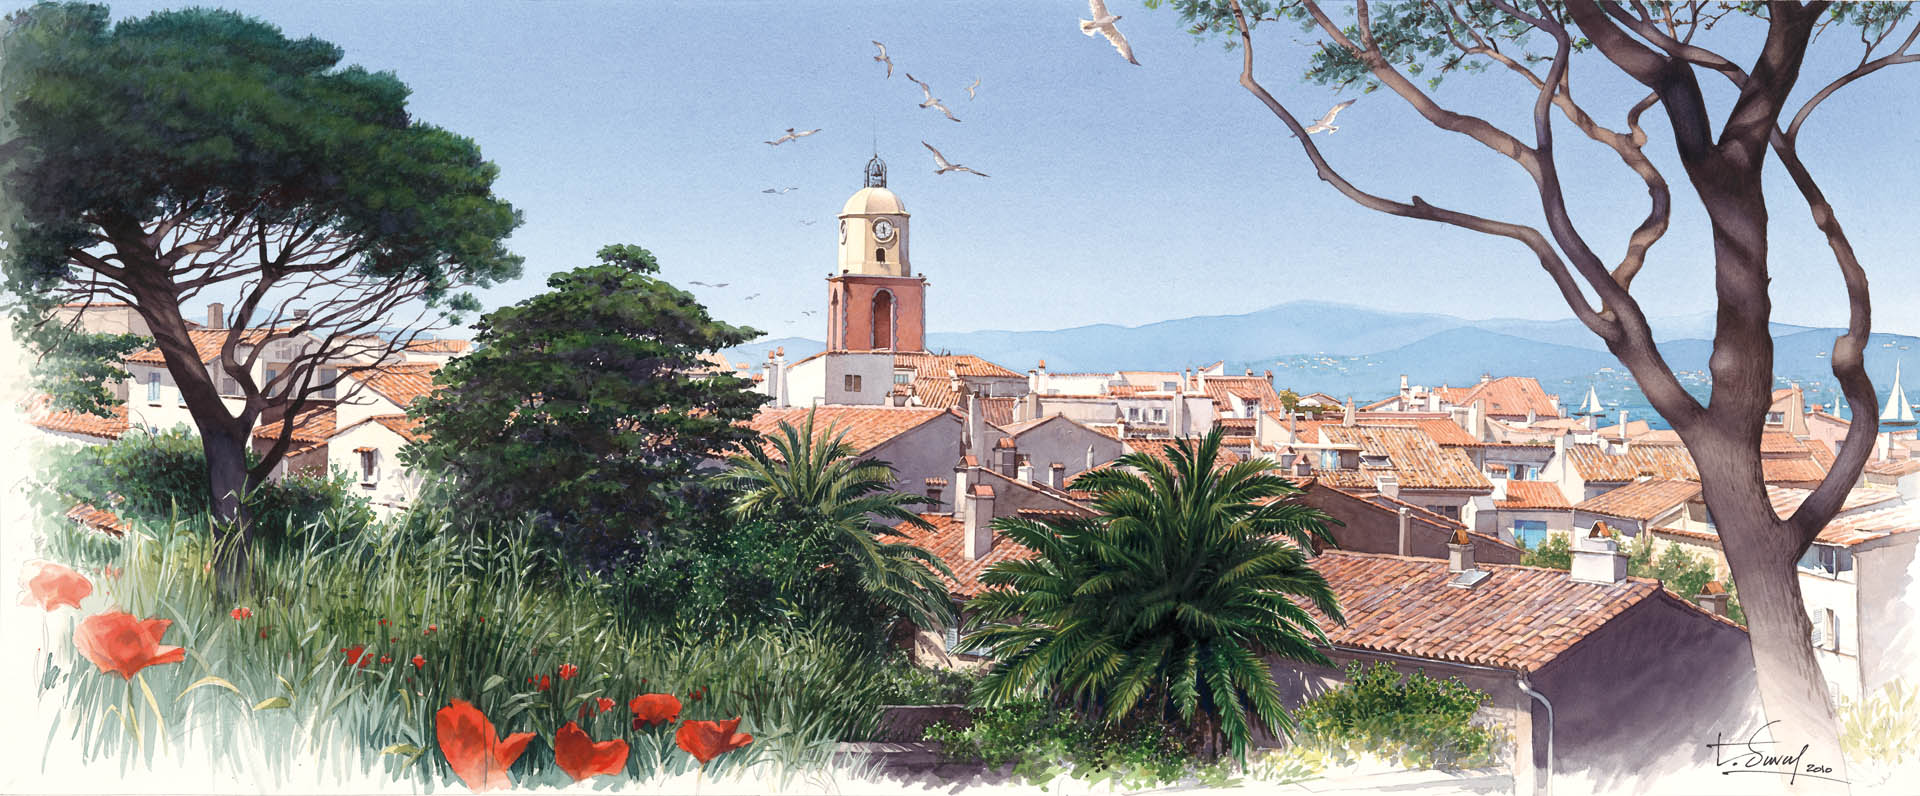 Le village de St Tropez